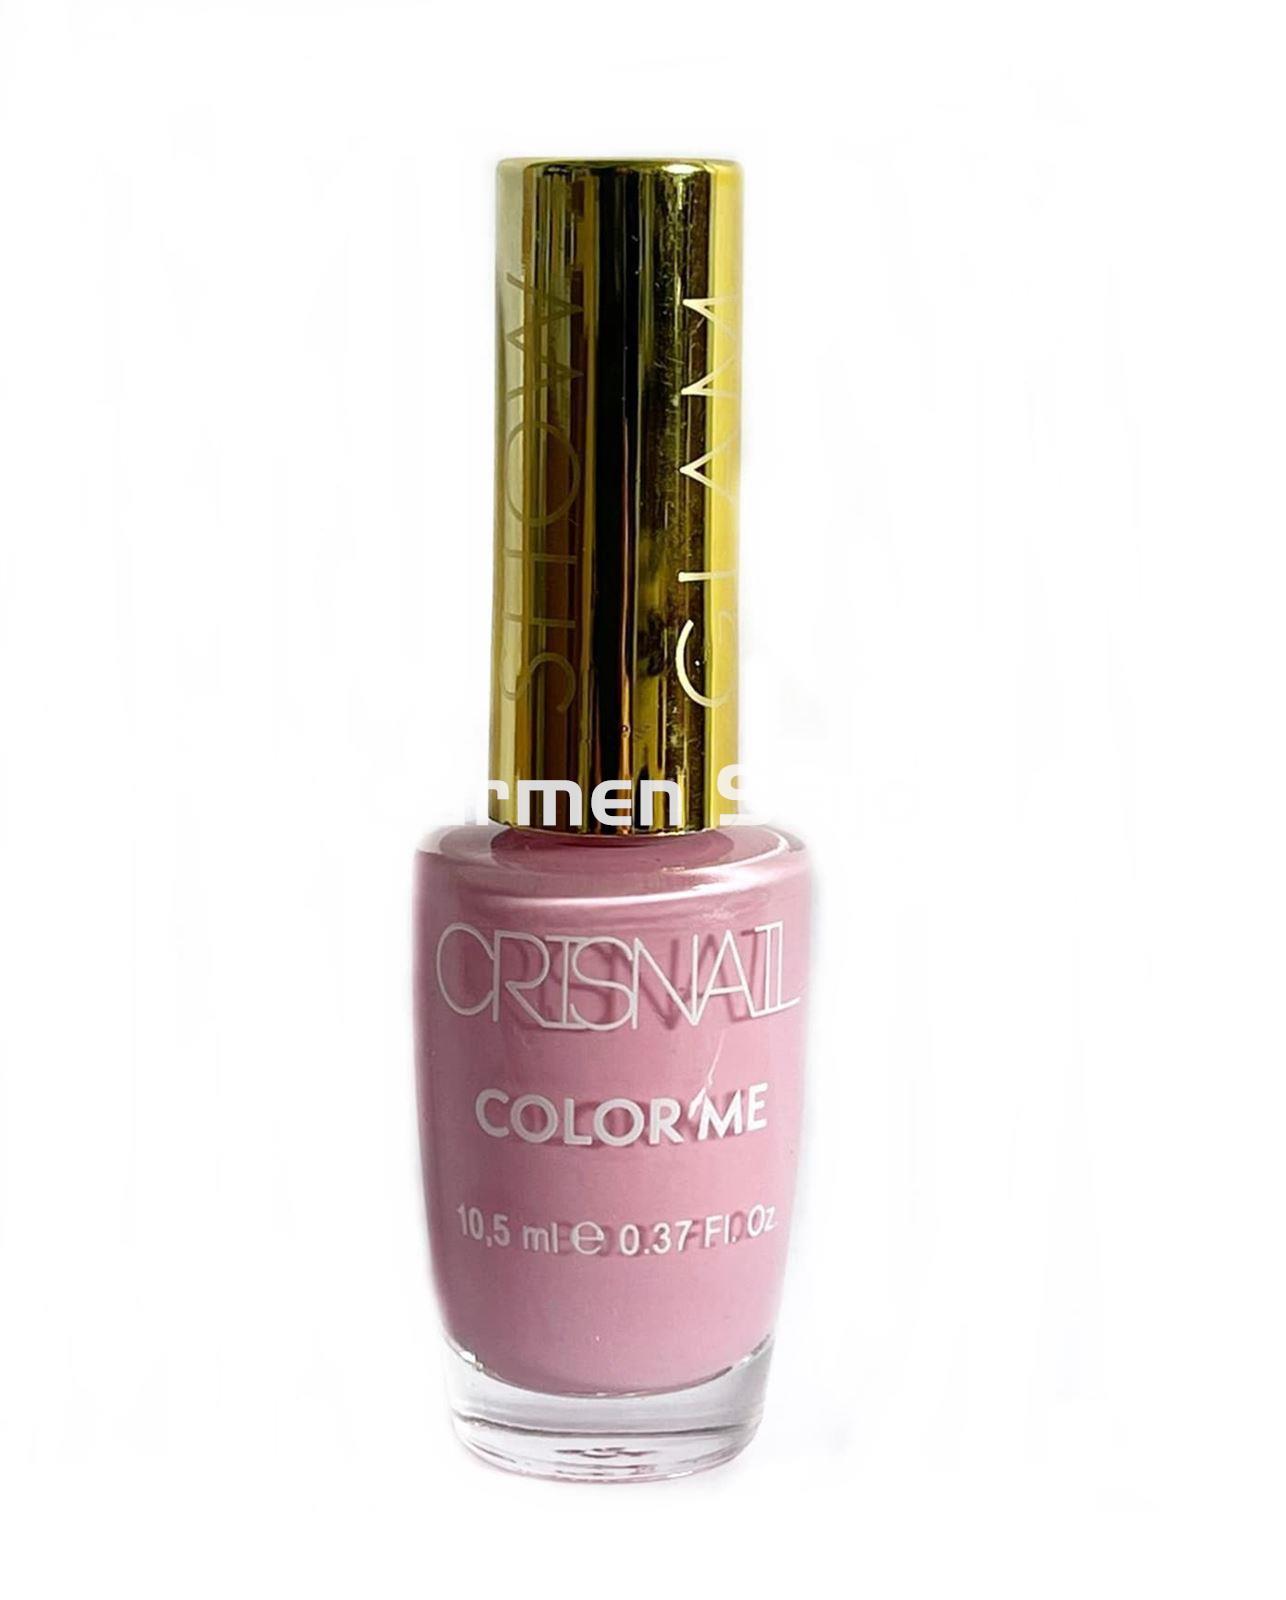 Crisnail Esmalte de Uñas Pink La Color Me - Imagen 1